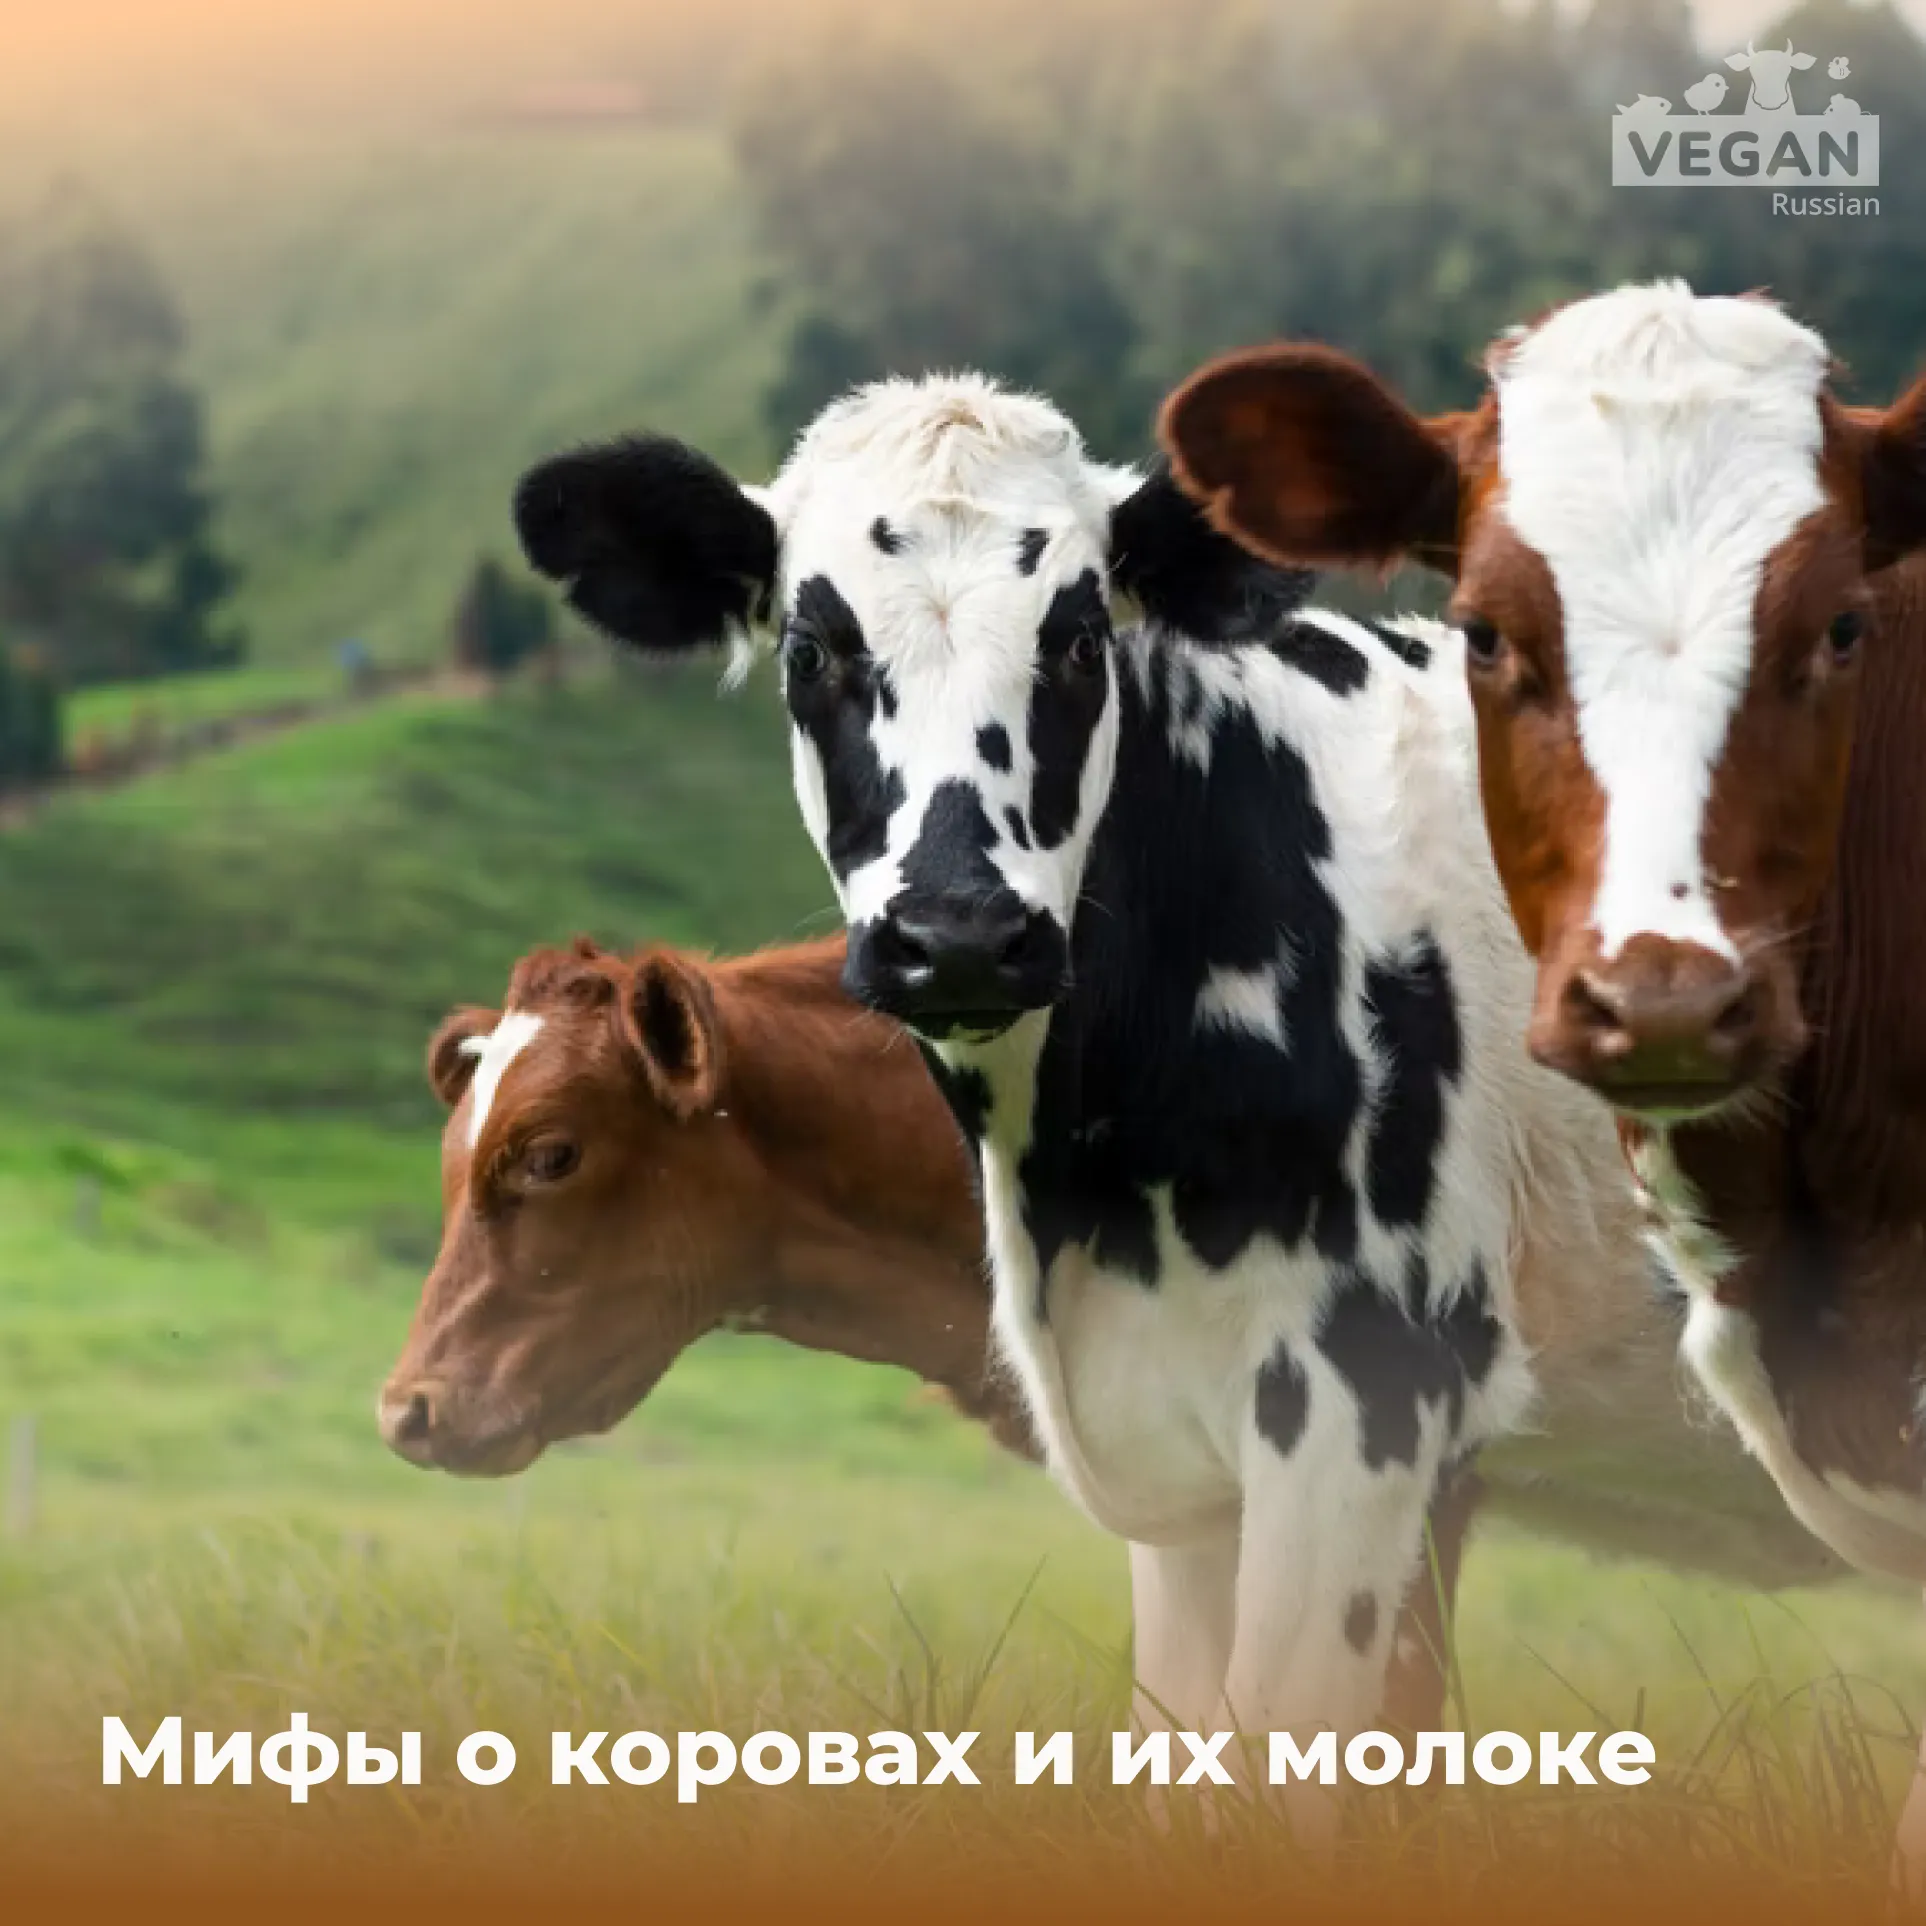 Мифы о коровьем молоке